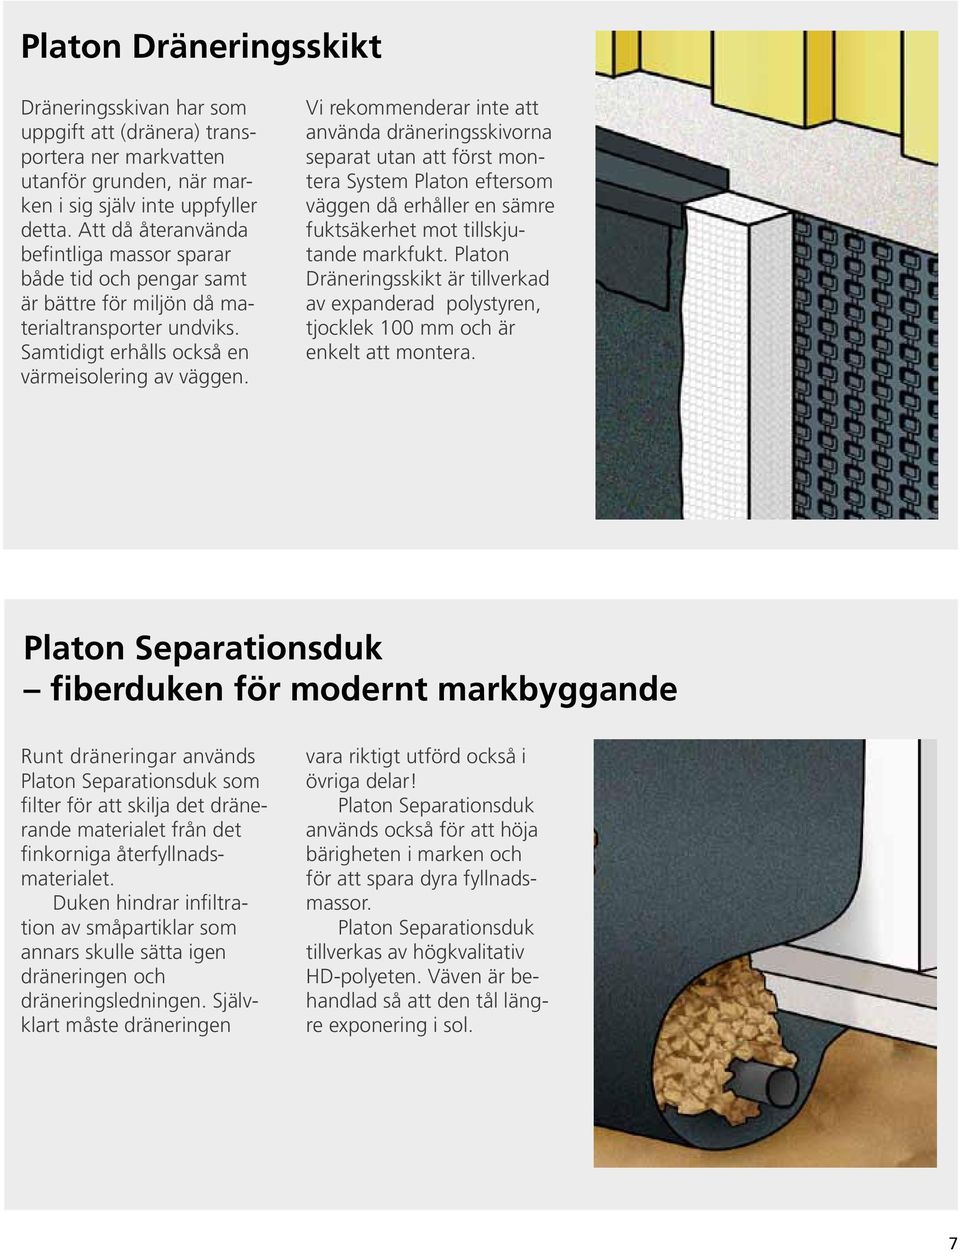 Vi rekommenderar inte att använda dräneringsskivorna separat utan att först montera System Platon eftersom väggen då erhåller en sämre fuktsäkerhet mot tillskjutande markfukt.